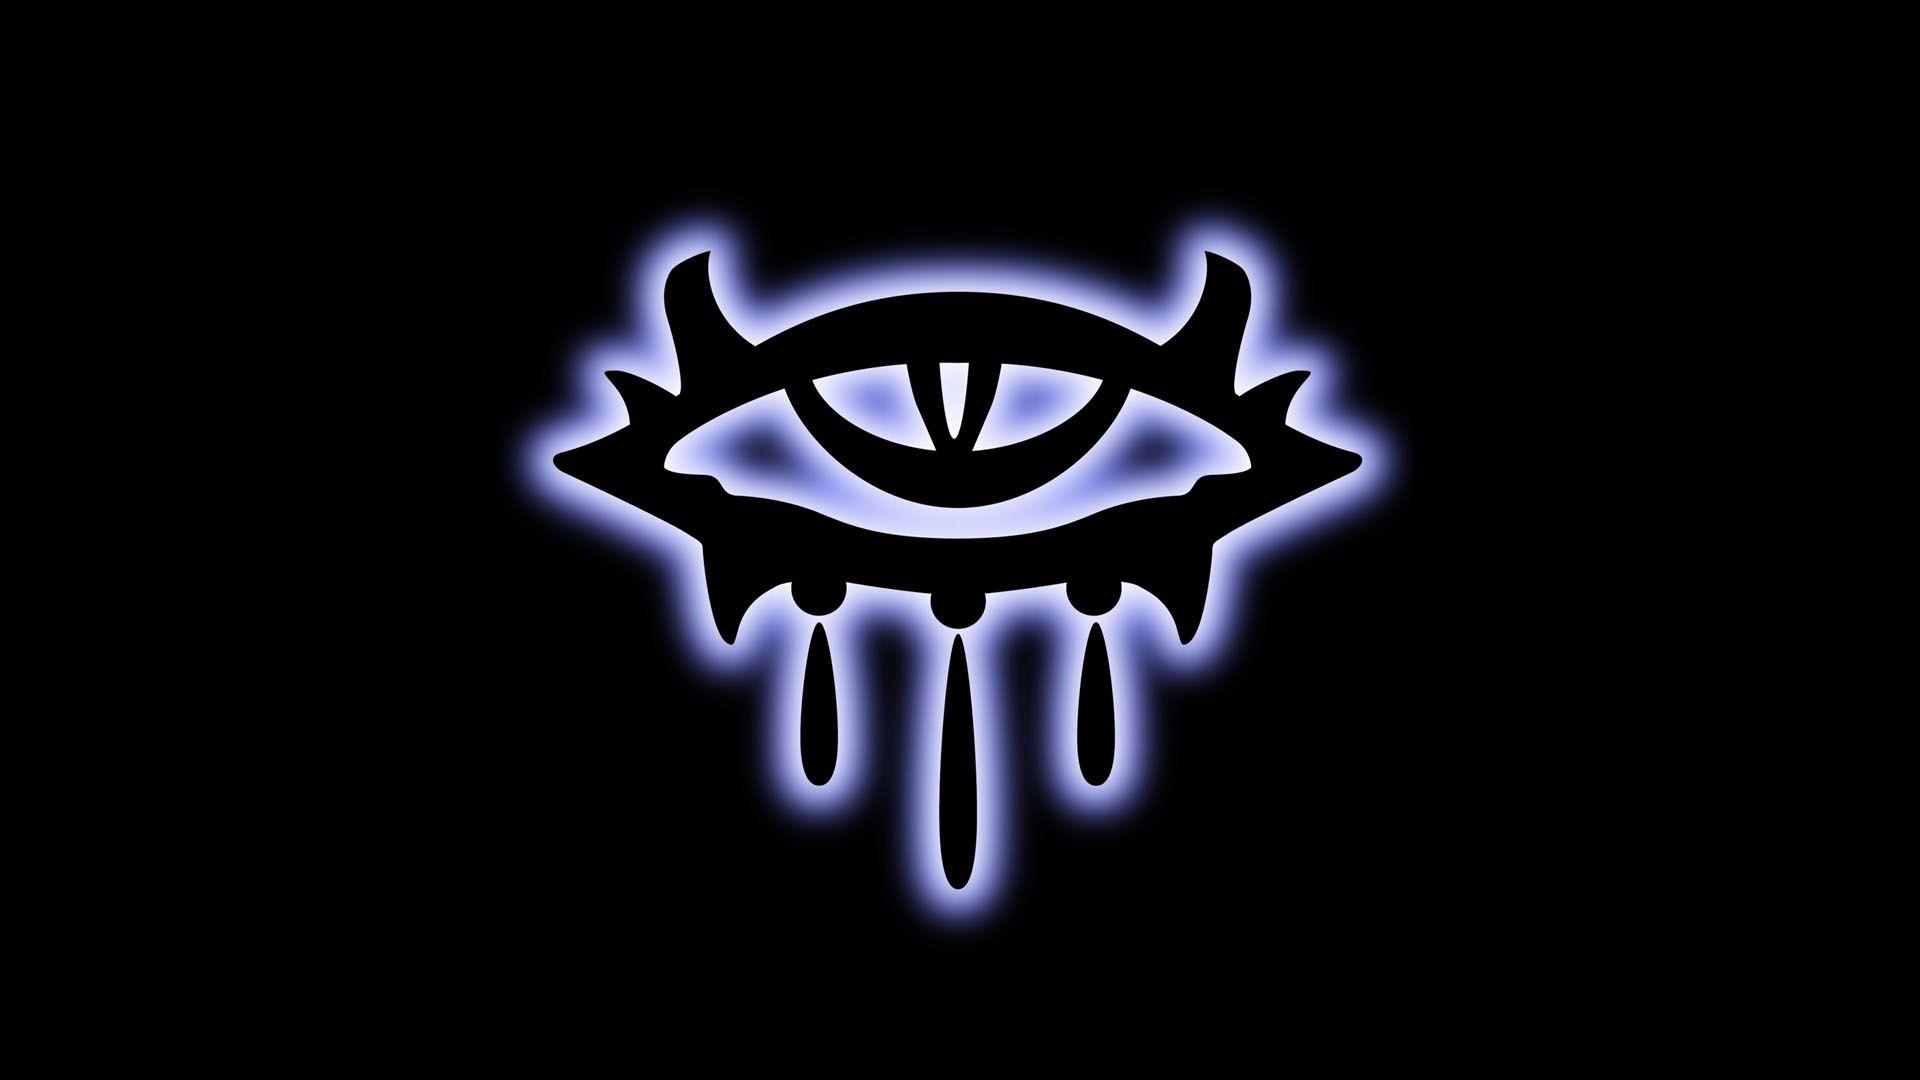 Neverwinter Nights Nwn Eye Logo Games Wallpaper Image